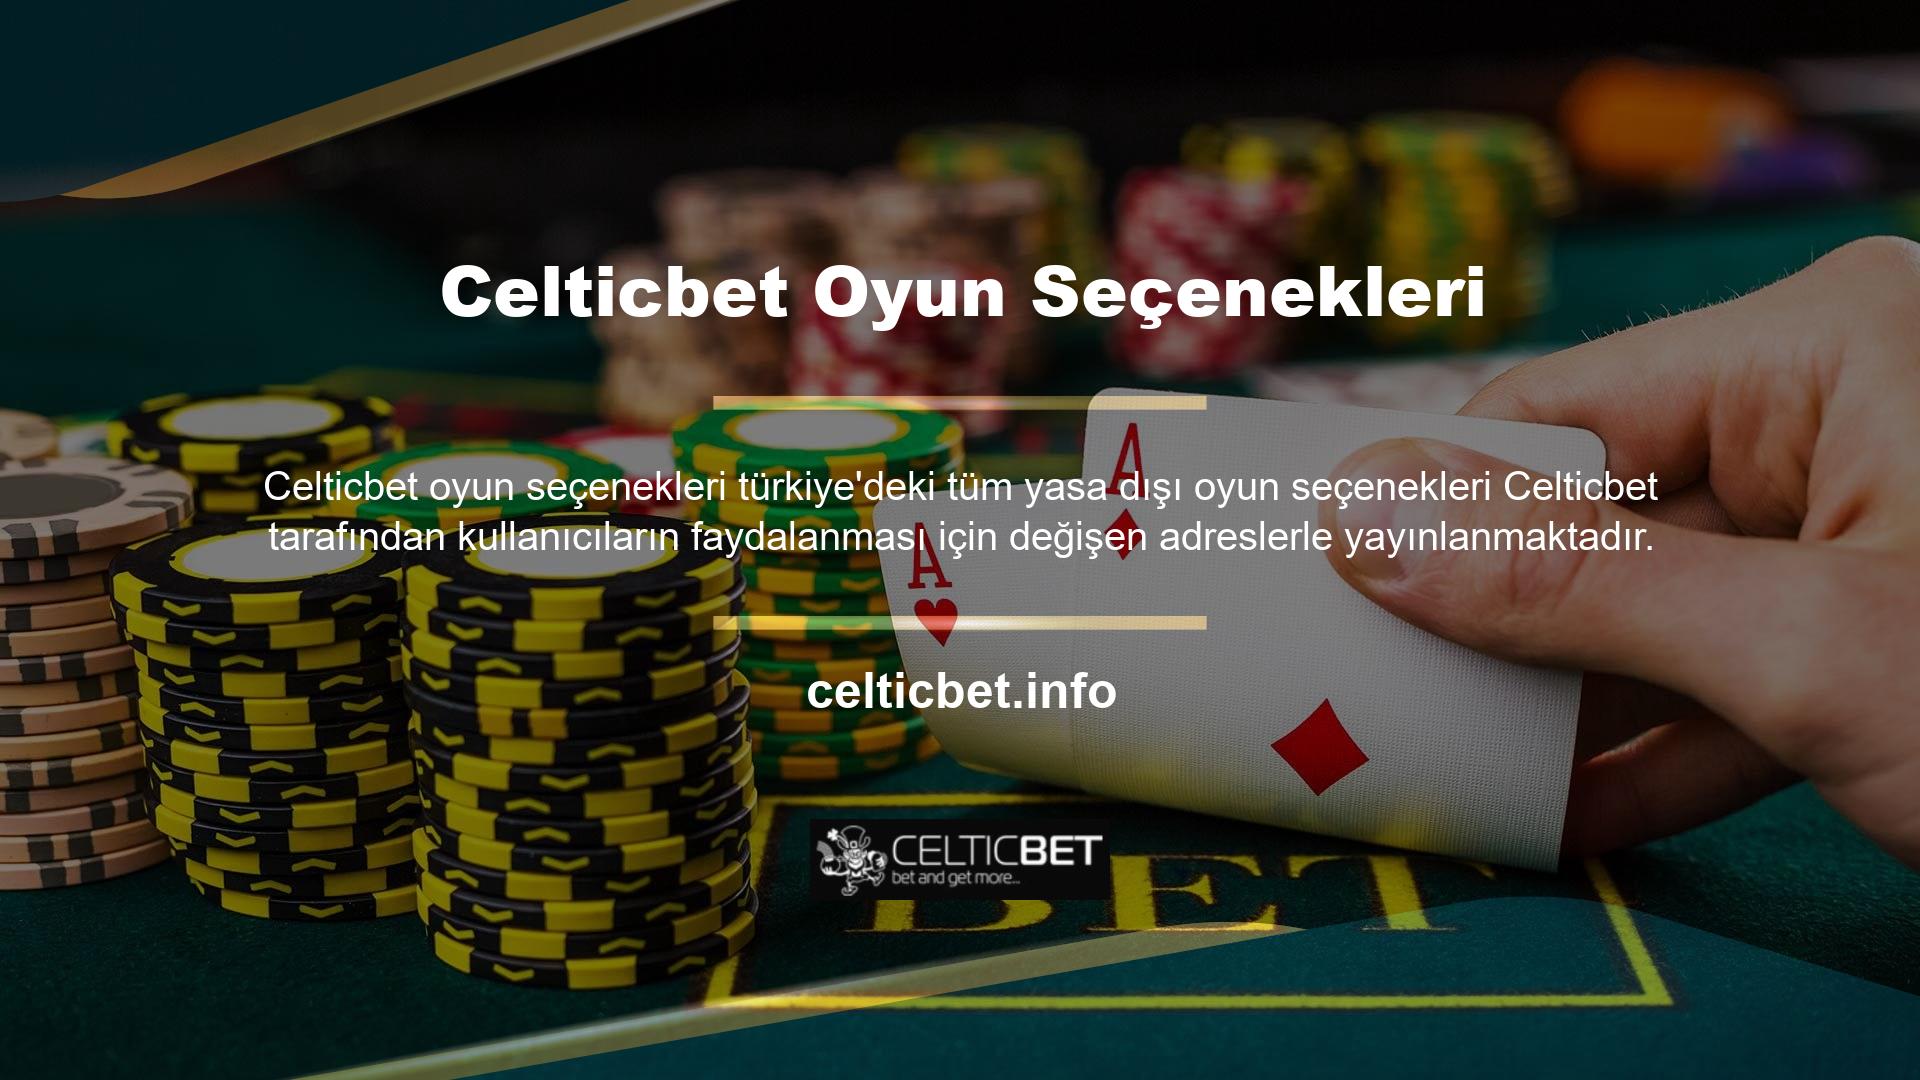 Celticbet maliyetine gelince, site her kullanıcıya özel hizmetler sunabiliyor